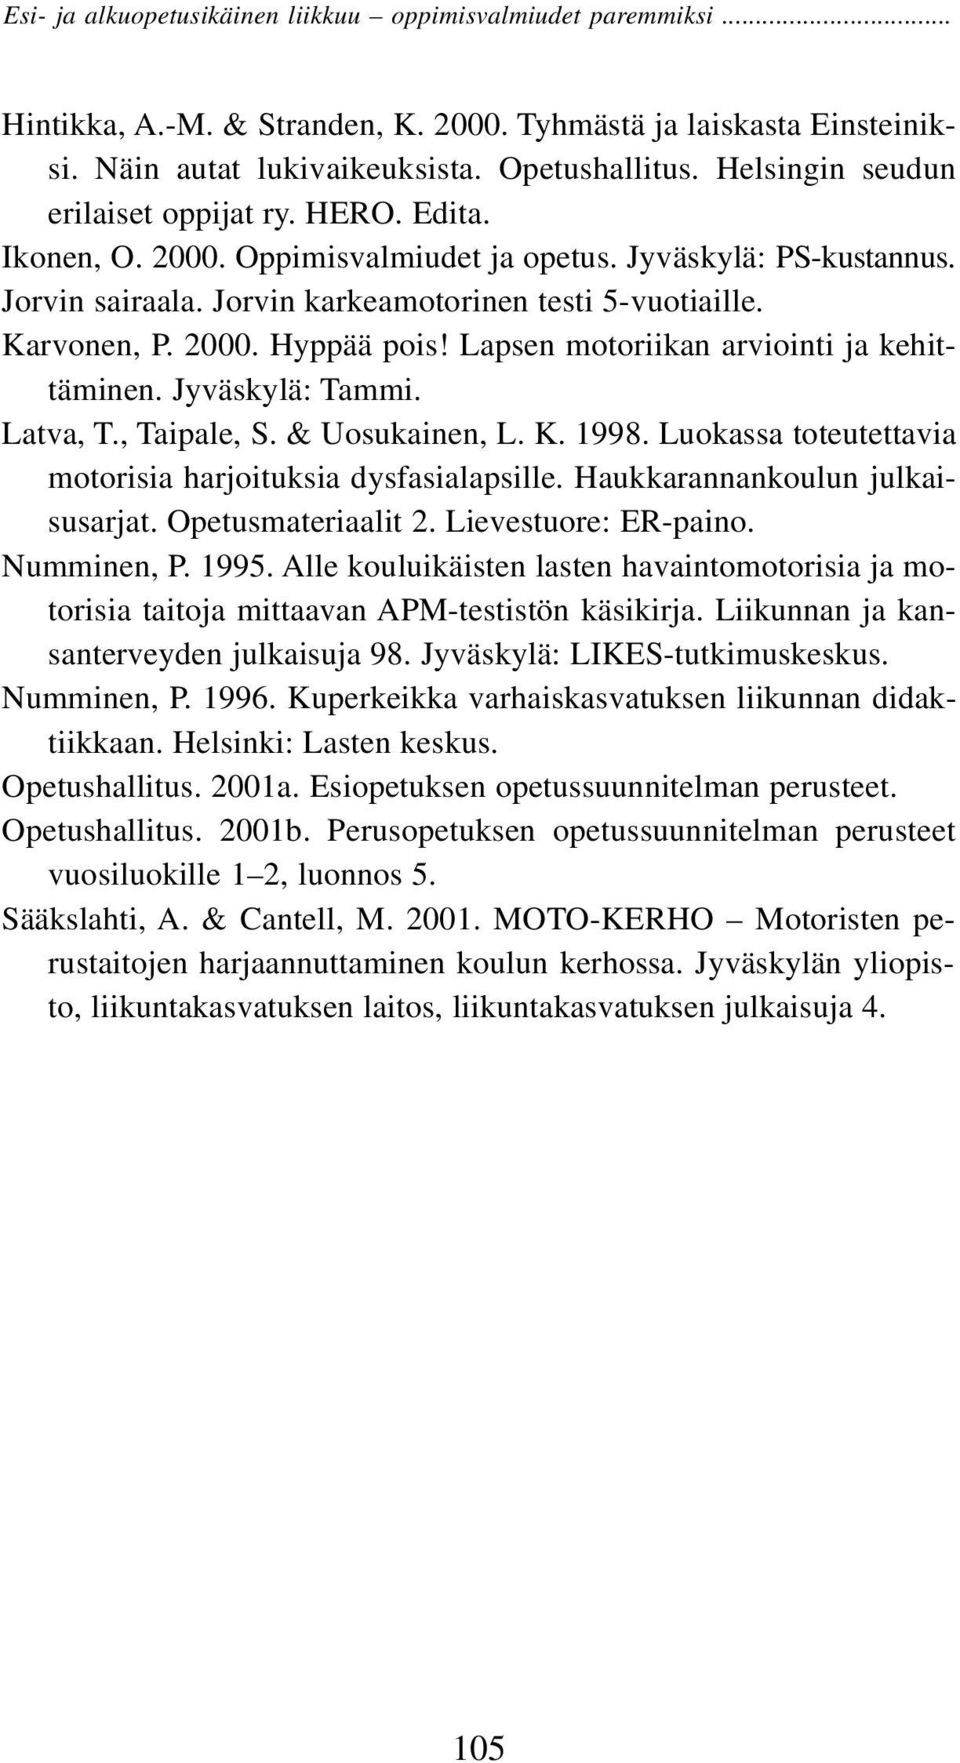 , Taipale, S. & Uosukainen, L. K. 1998. Luokassa toteutettavia motorisia harjoituksia dysfasialapsille. Haukkarannankoulun julkaisusarjat. Opetusmateriaalit 2. Lievestuore: ER-paino. Numminen, P.